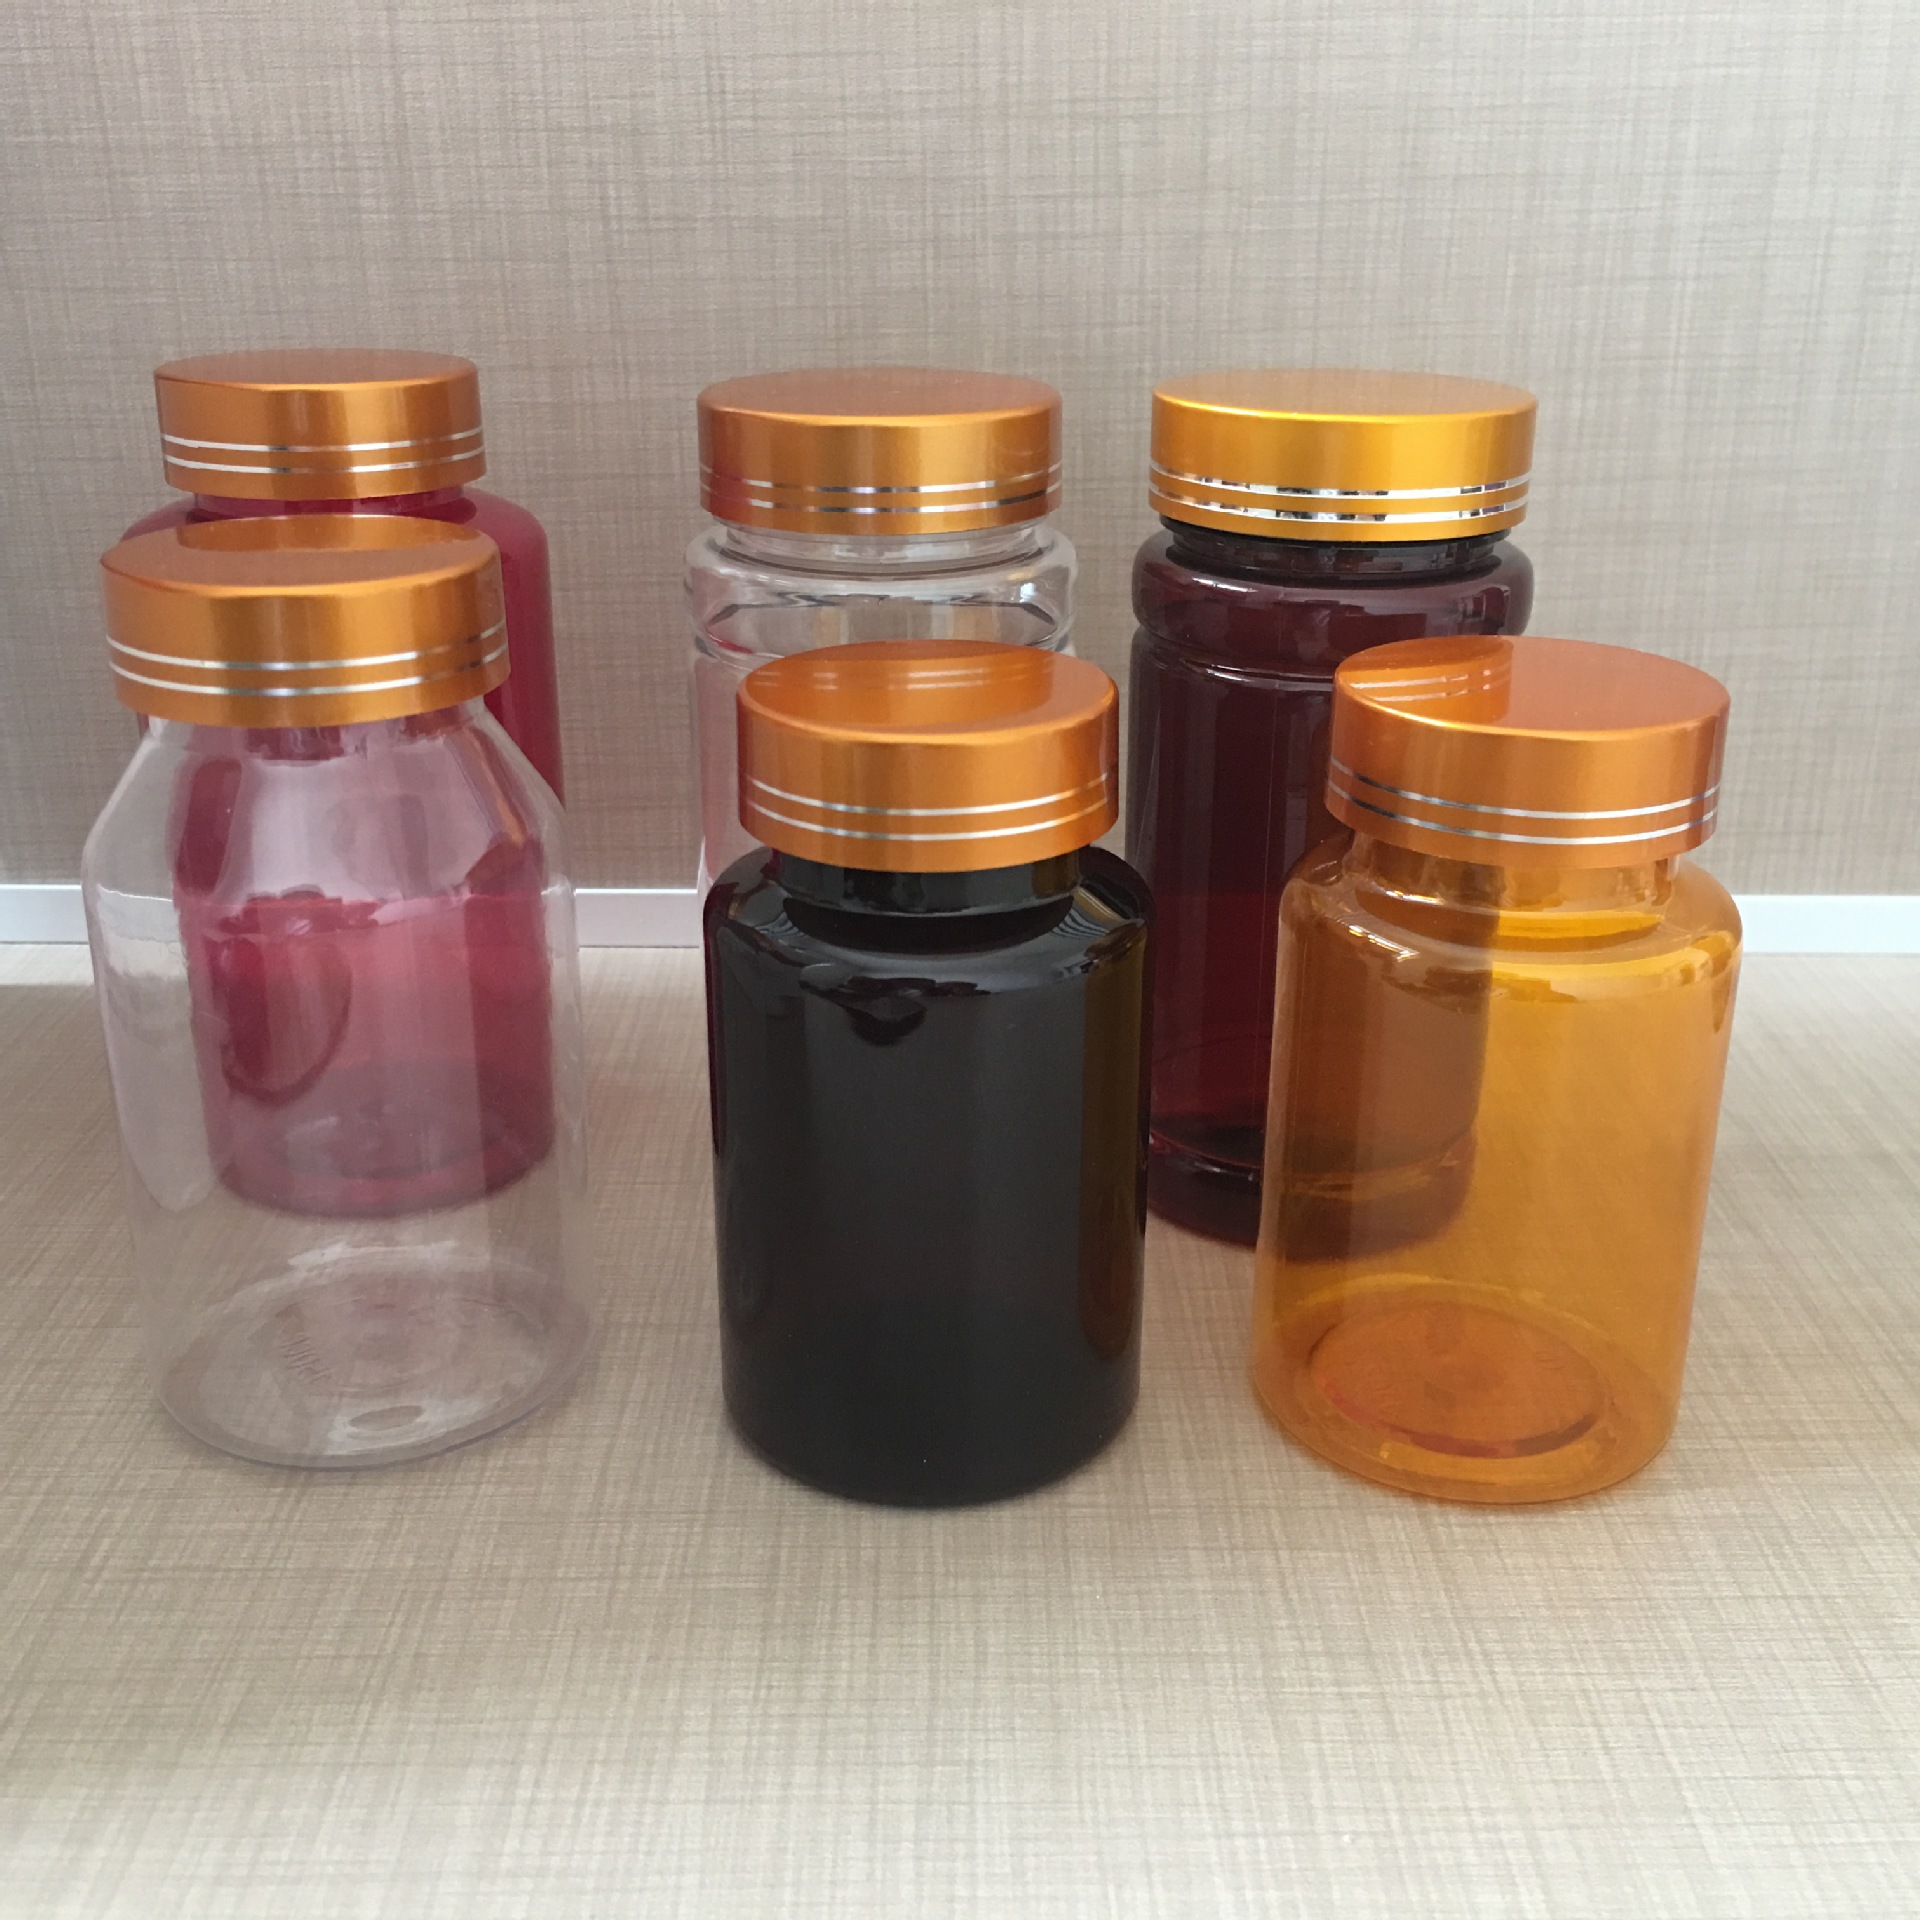 口服液体药用塑料瓶液体塑料瓶外用塑料瓶100ml防盗塑料瓶PE塑料示例图11